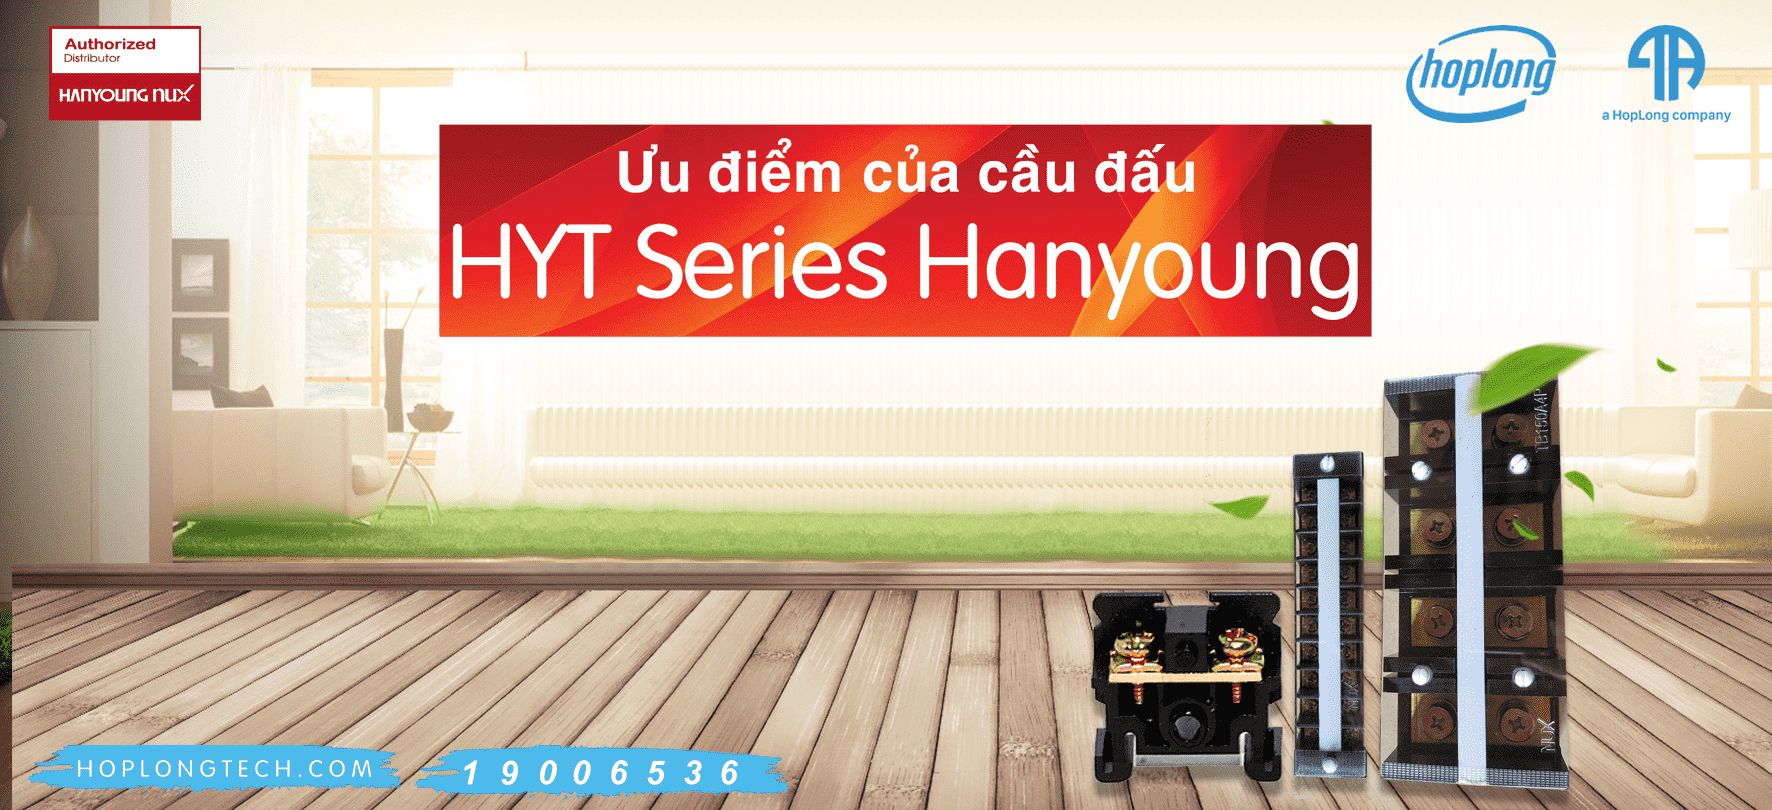 Ưu điểm của cầu đấu HYT Series Hanyoung